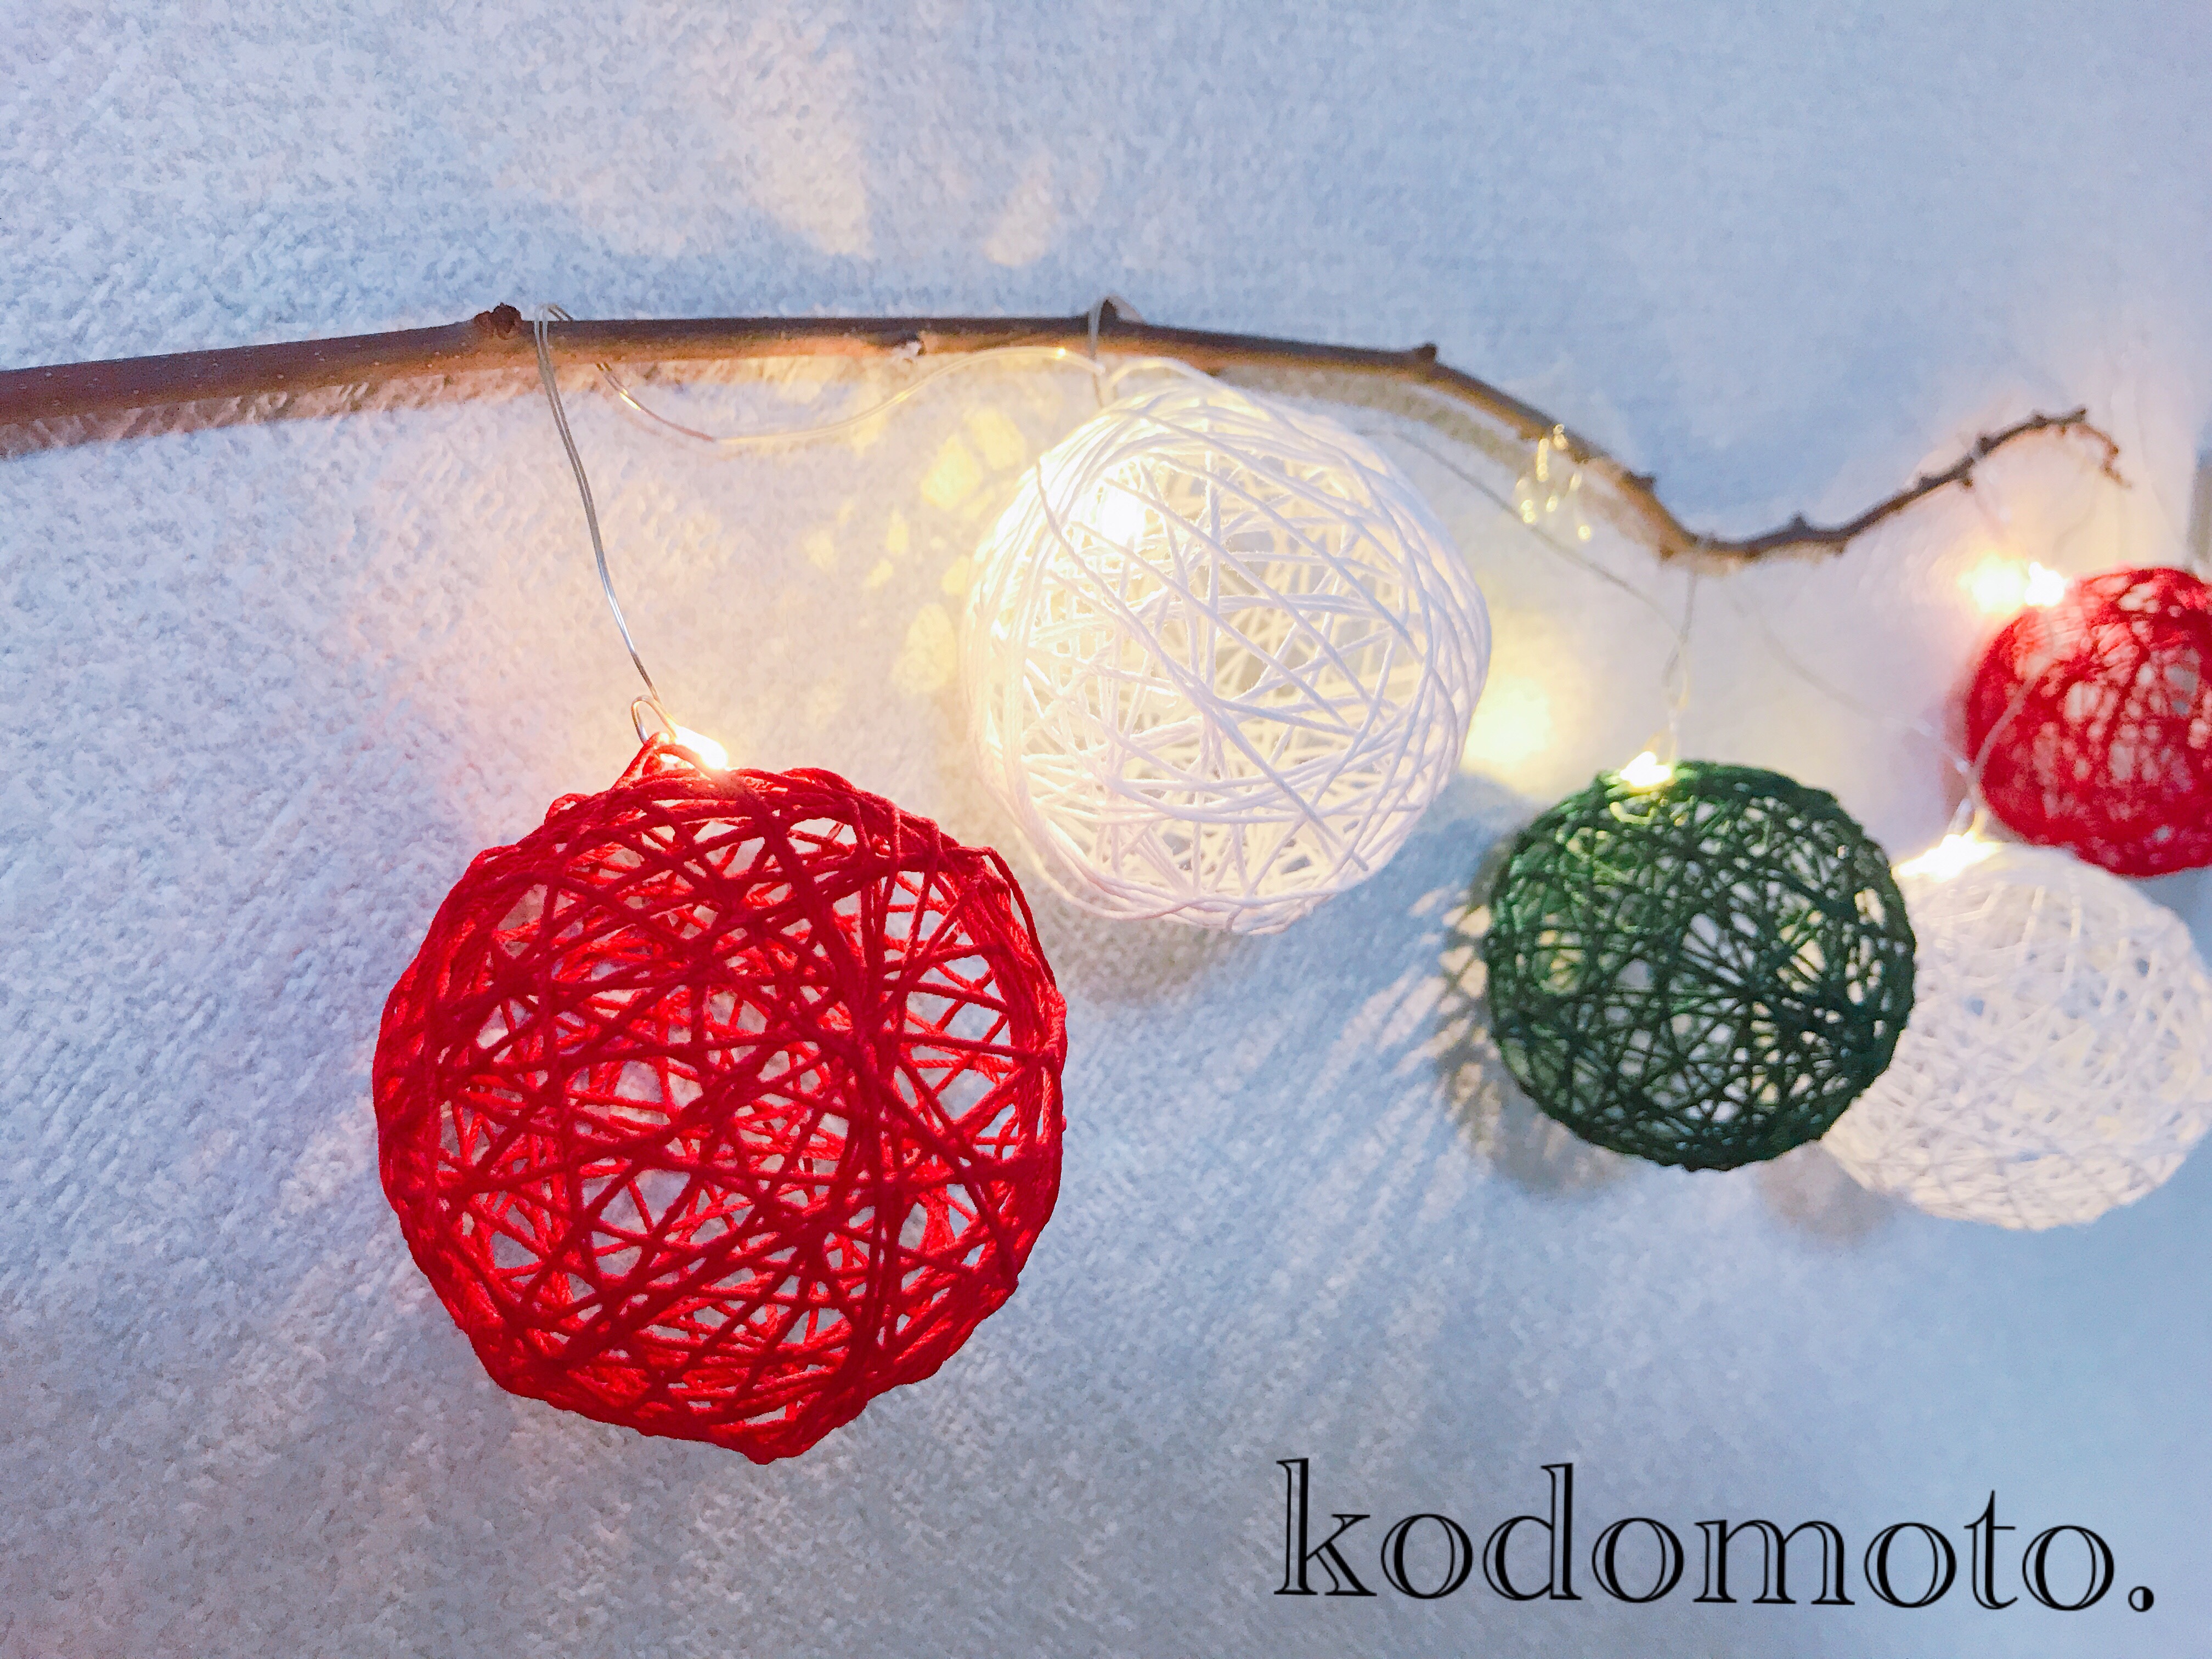 クリスマスの飾りを手作り 100均でおしゃれに コットンボール Kodomoto